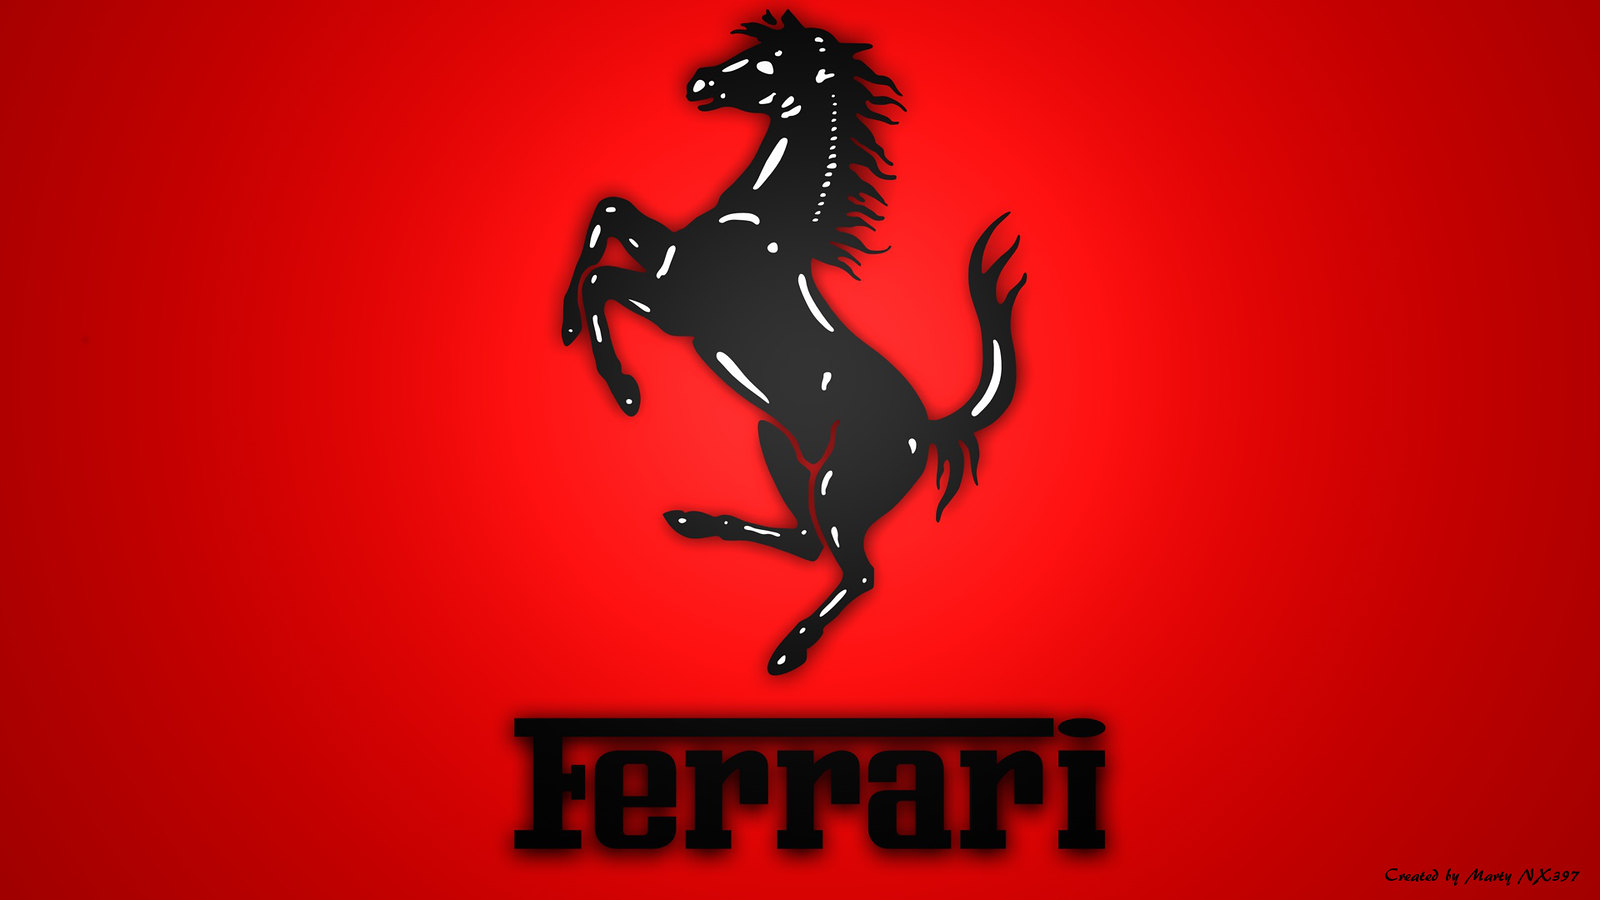 Ferrari Logo Lion Wallpaper #Ferrari, #FerrariLogo, #LionW…